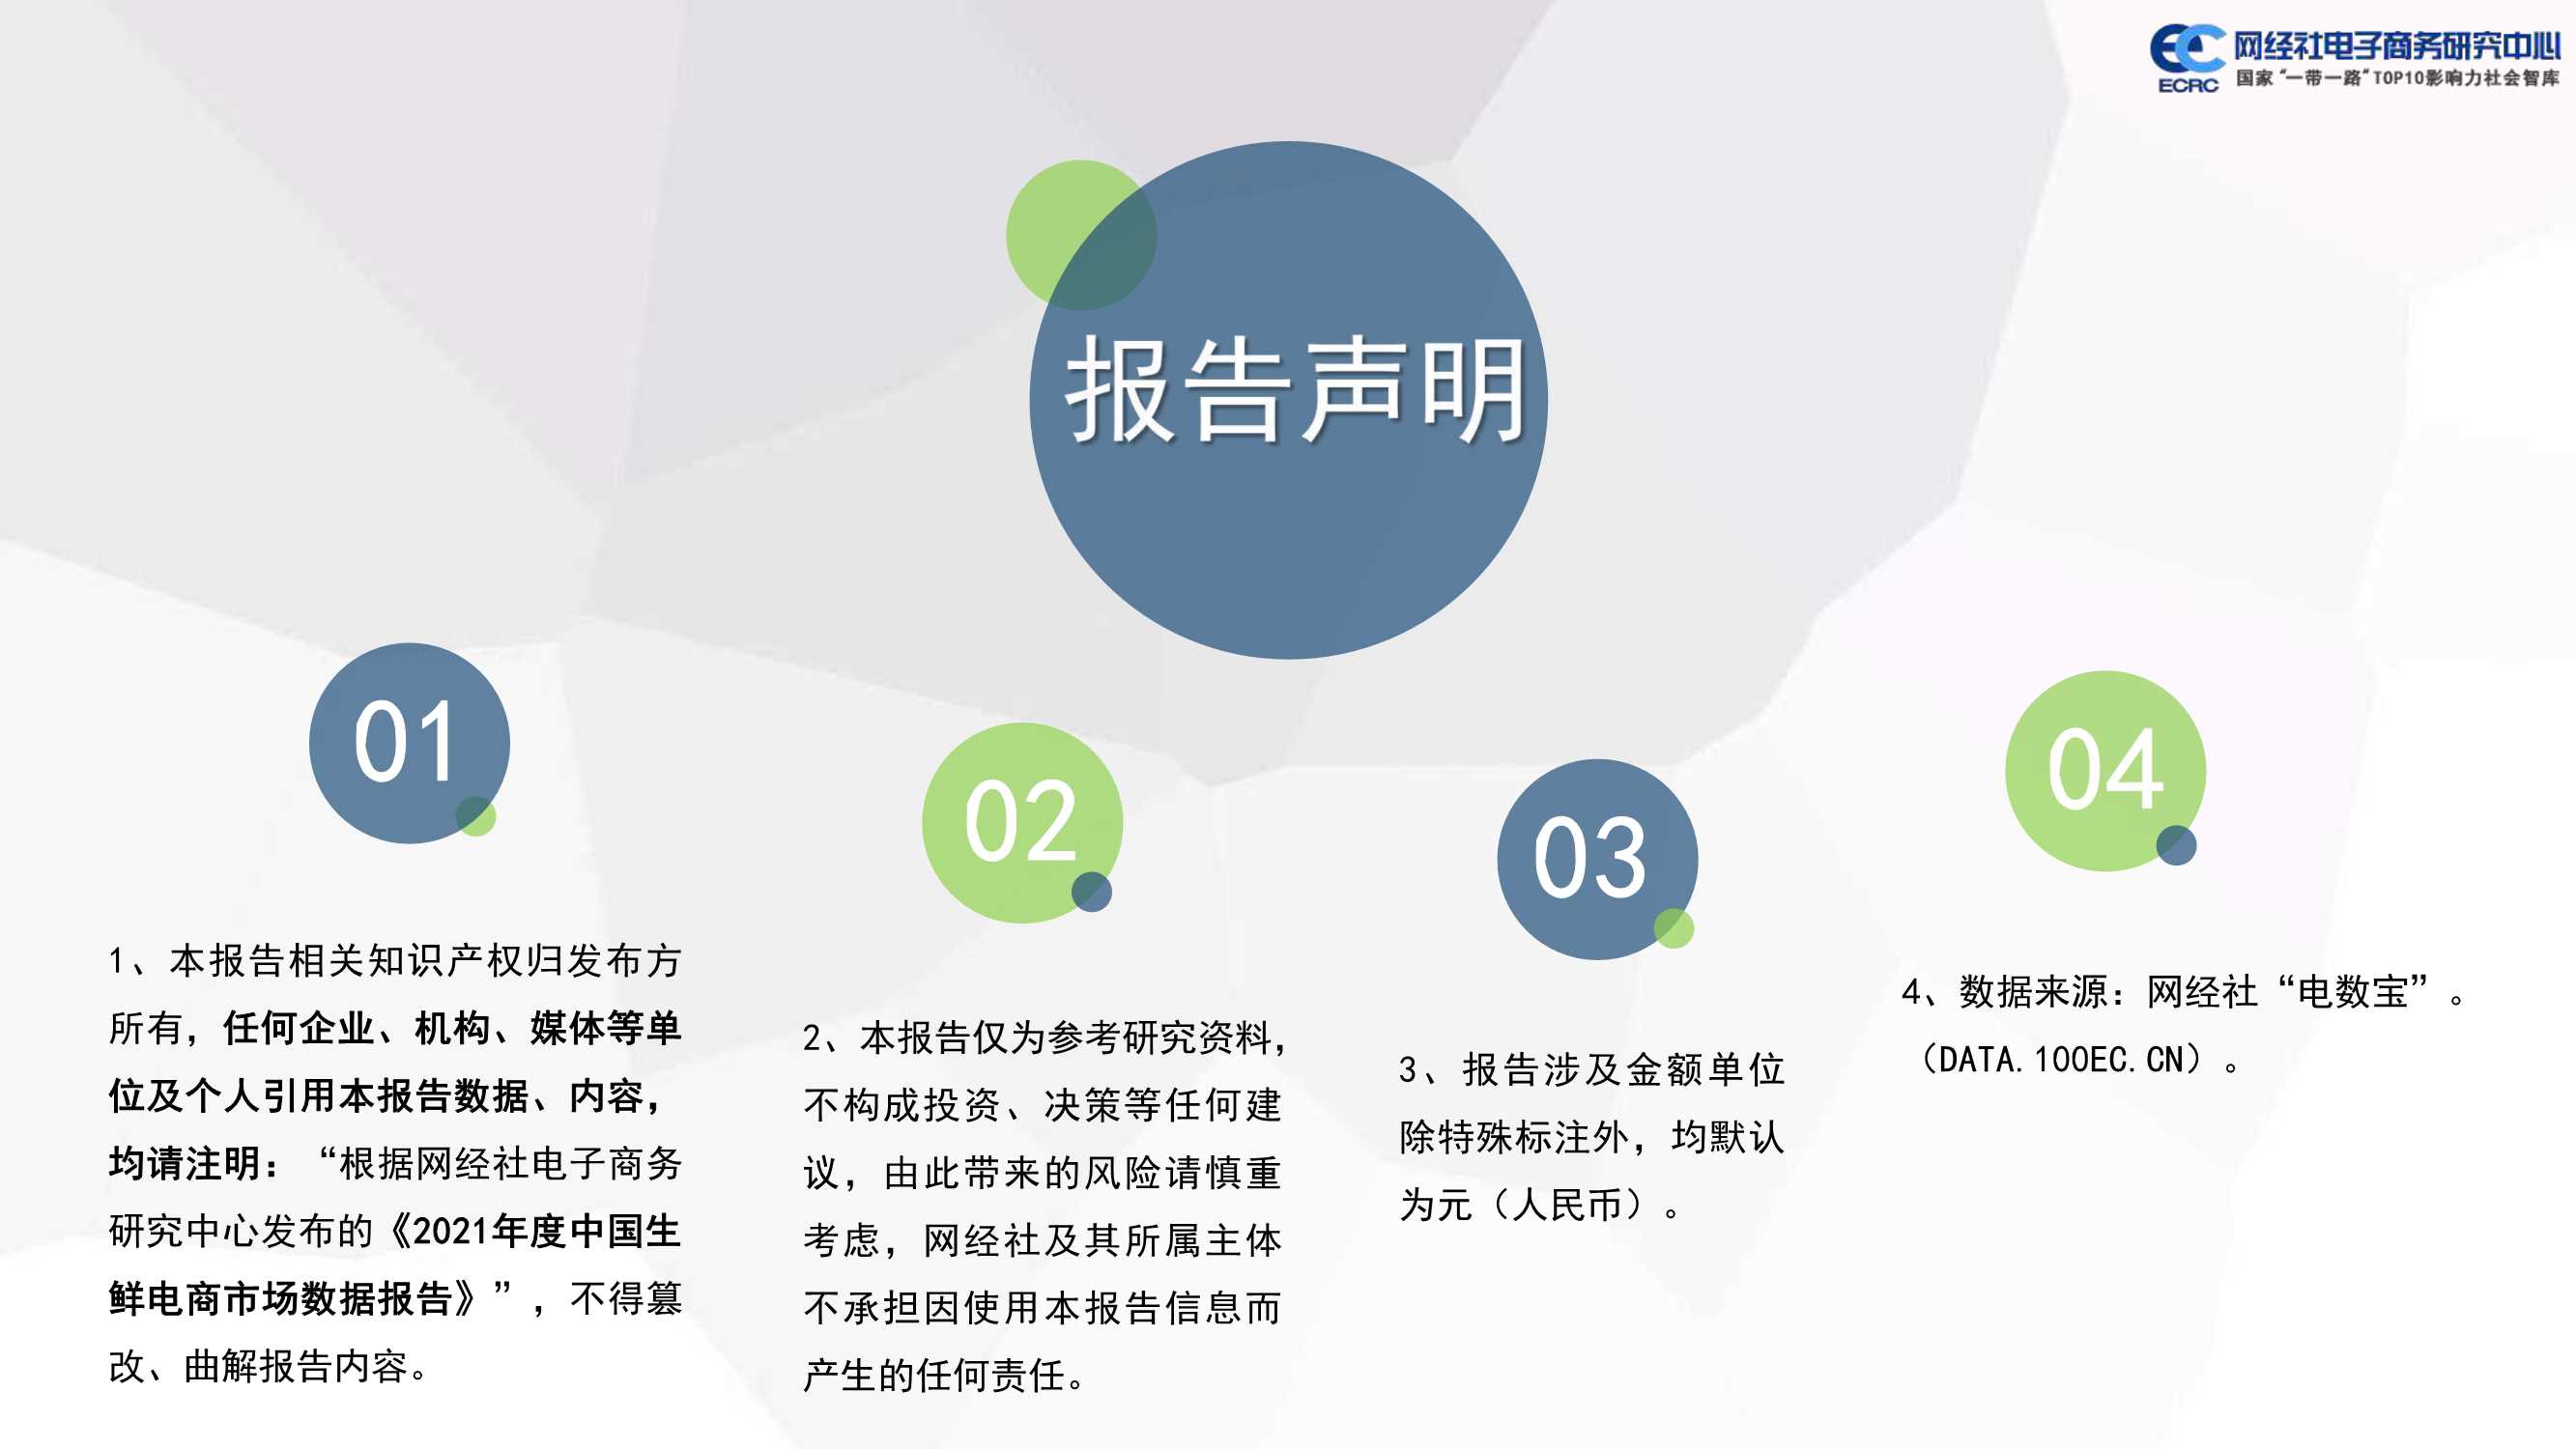 2021年度中国生鲜电商市场数据报告-2022.03-39页